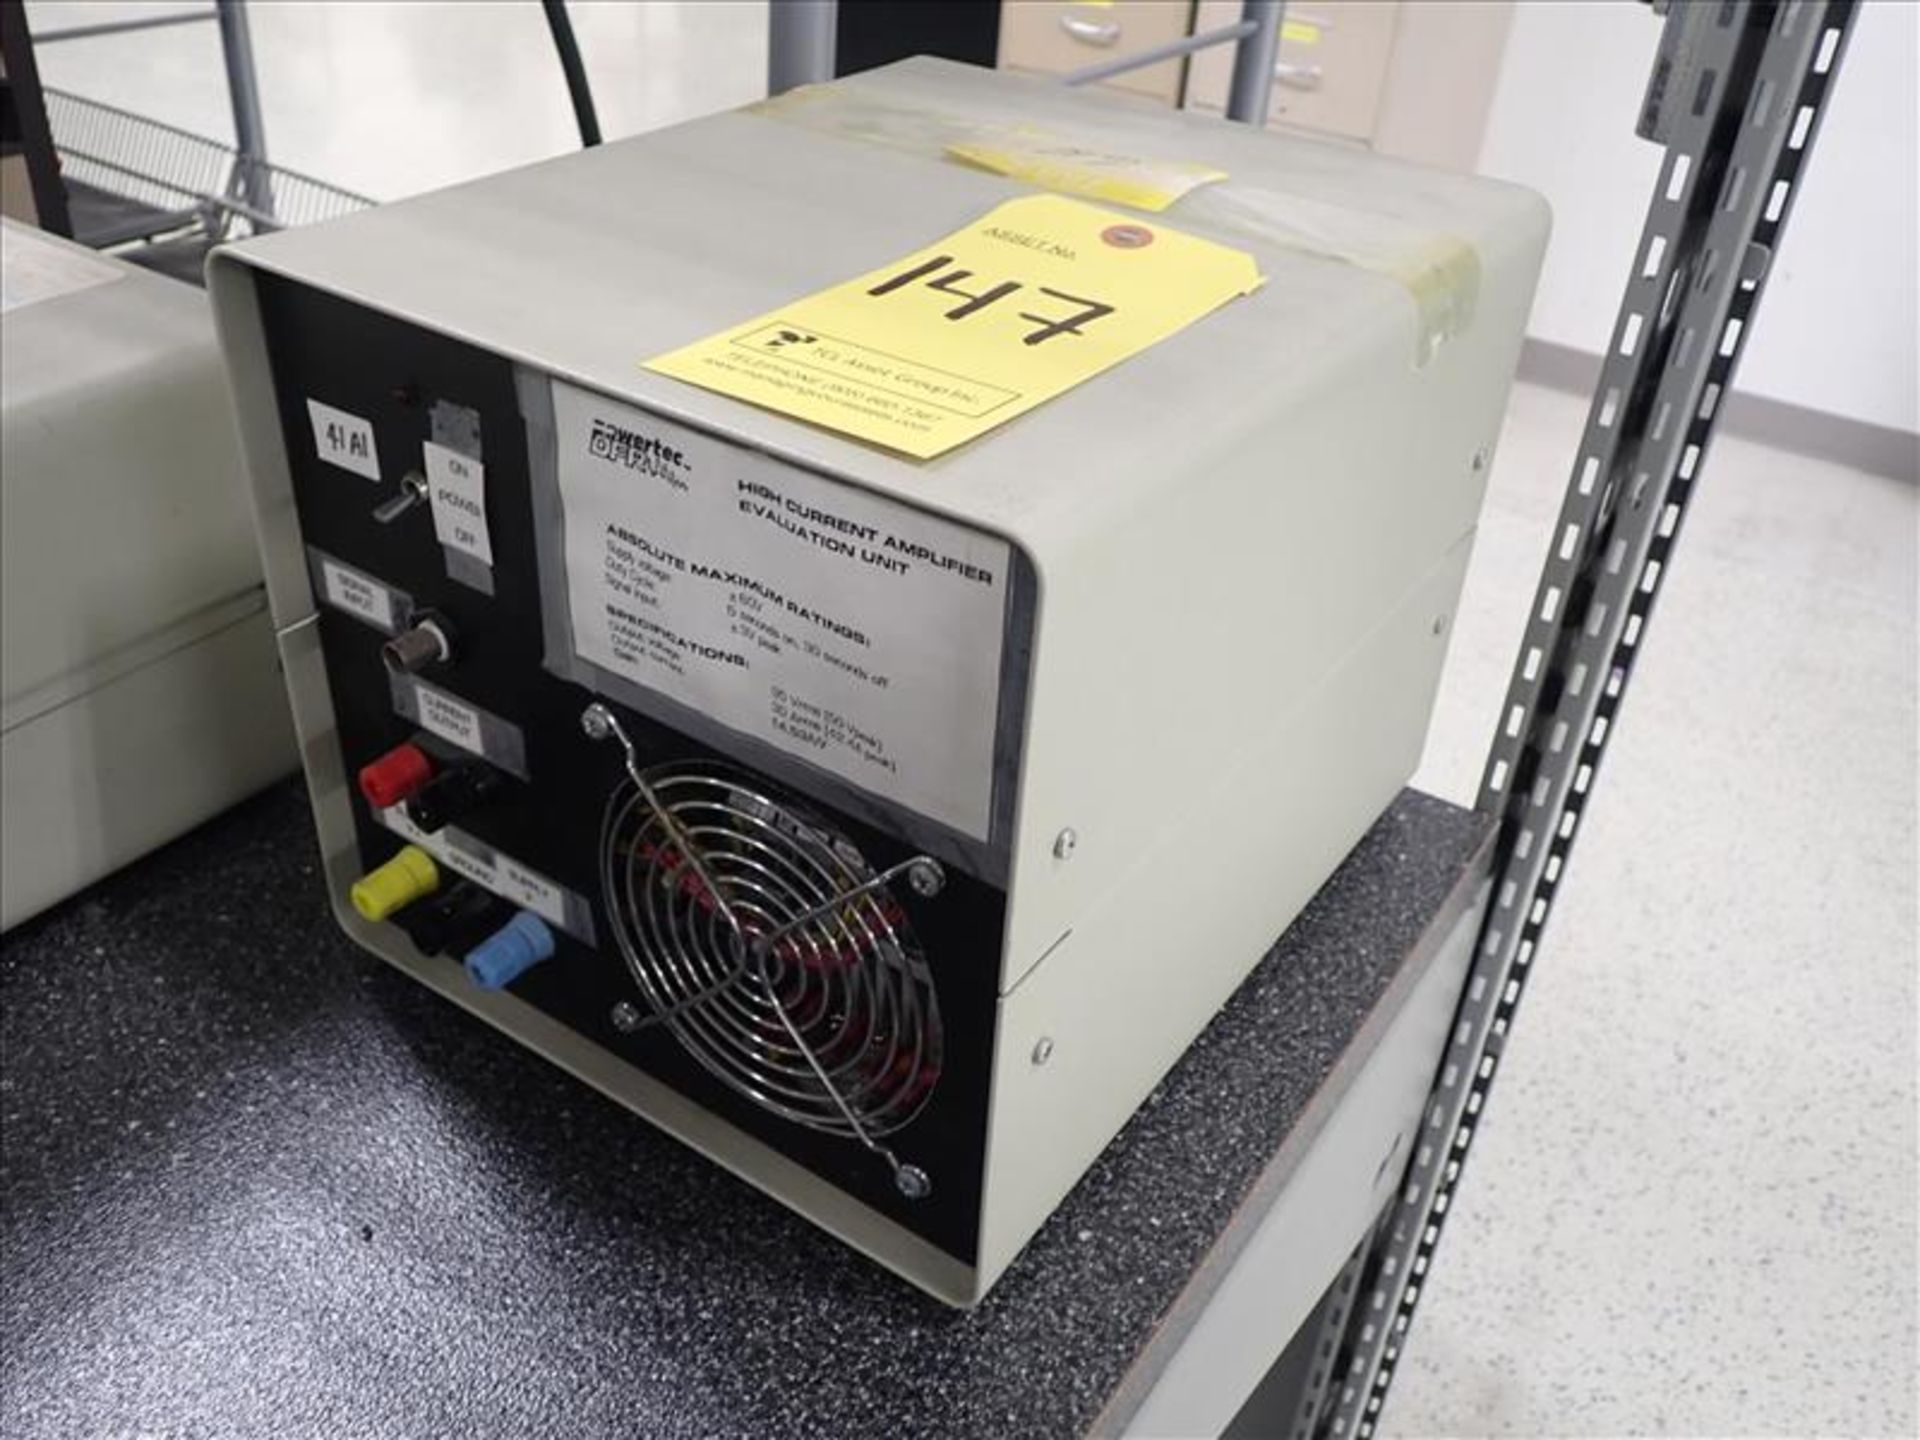 PowerTec DFR High Current Amplifier Evaluation Unit, ser. no. 9424